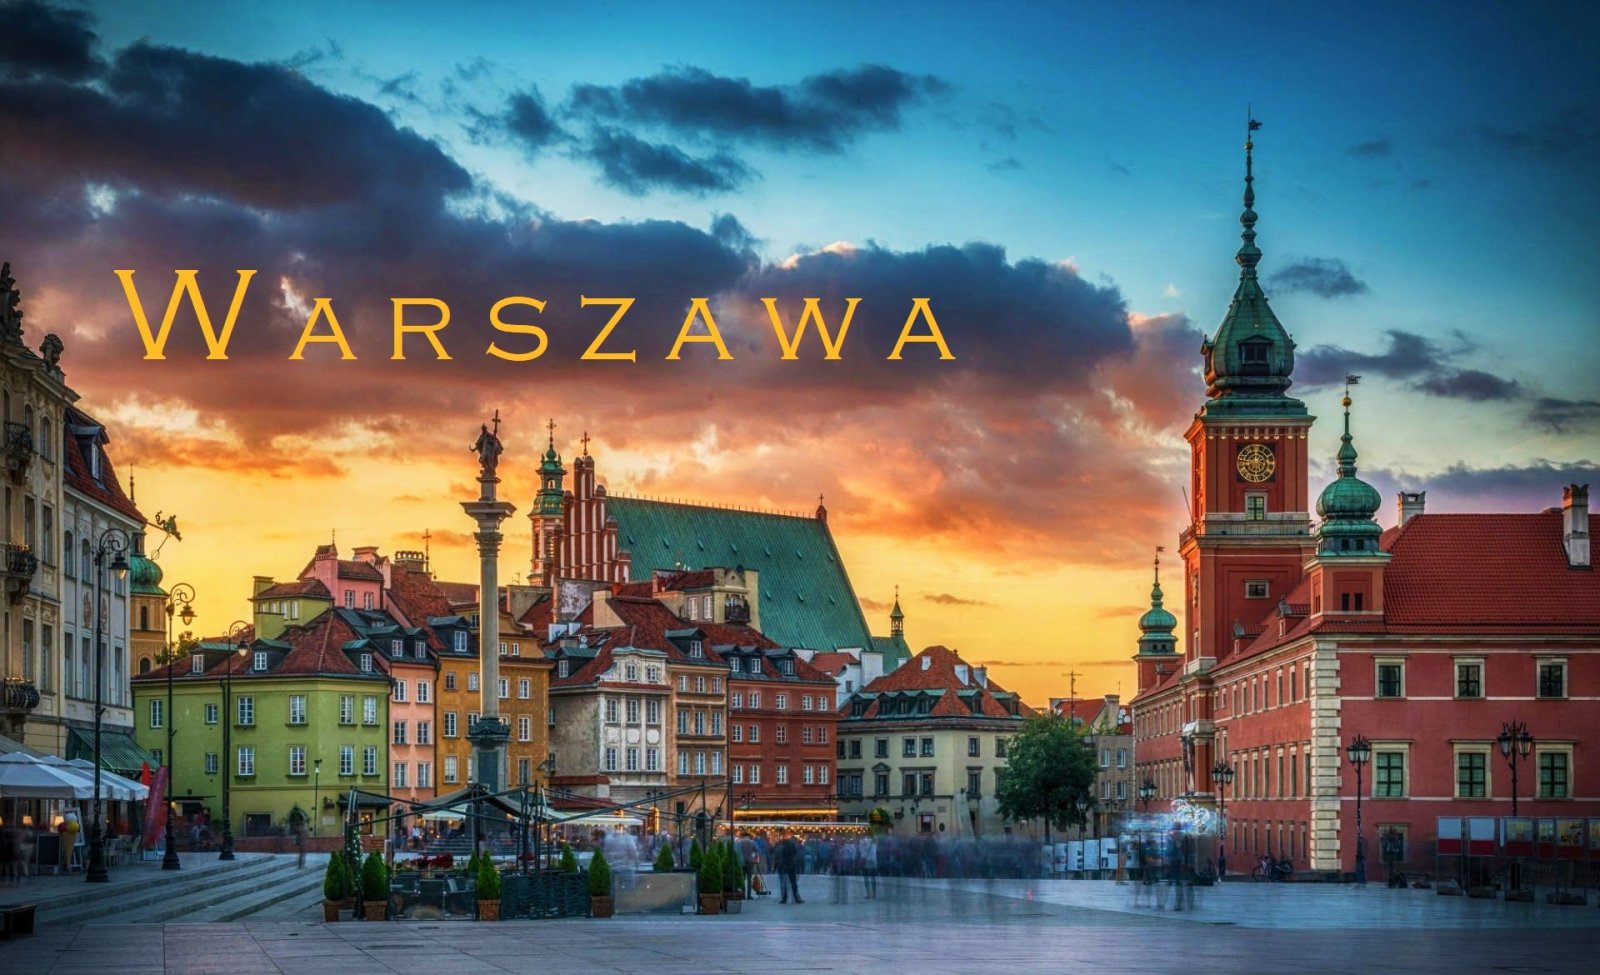 Warsaw 2.jpg